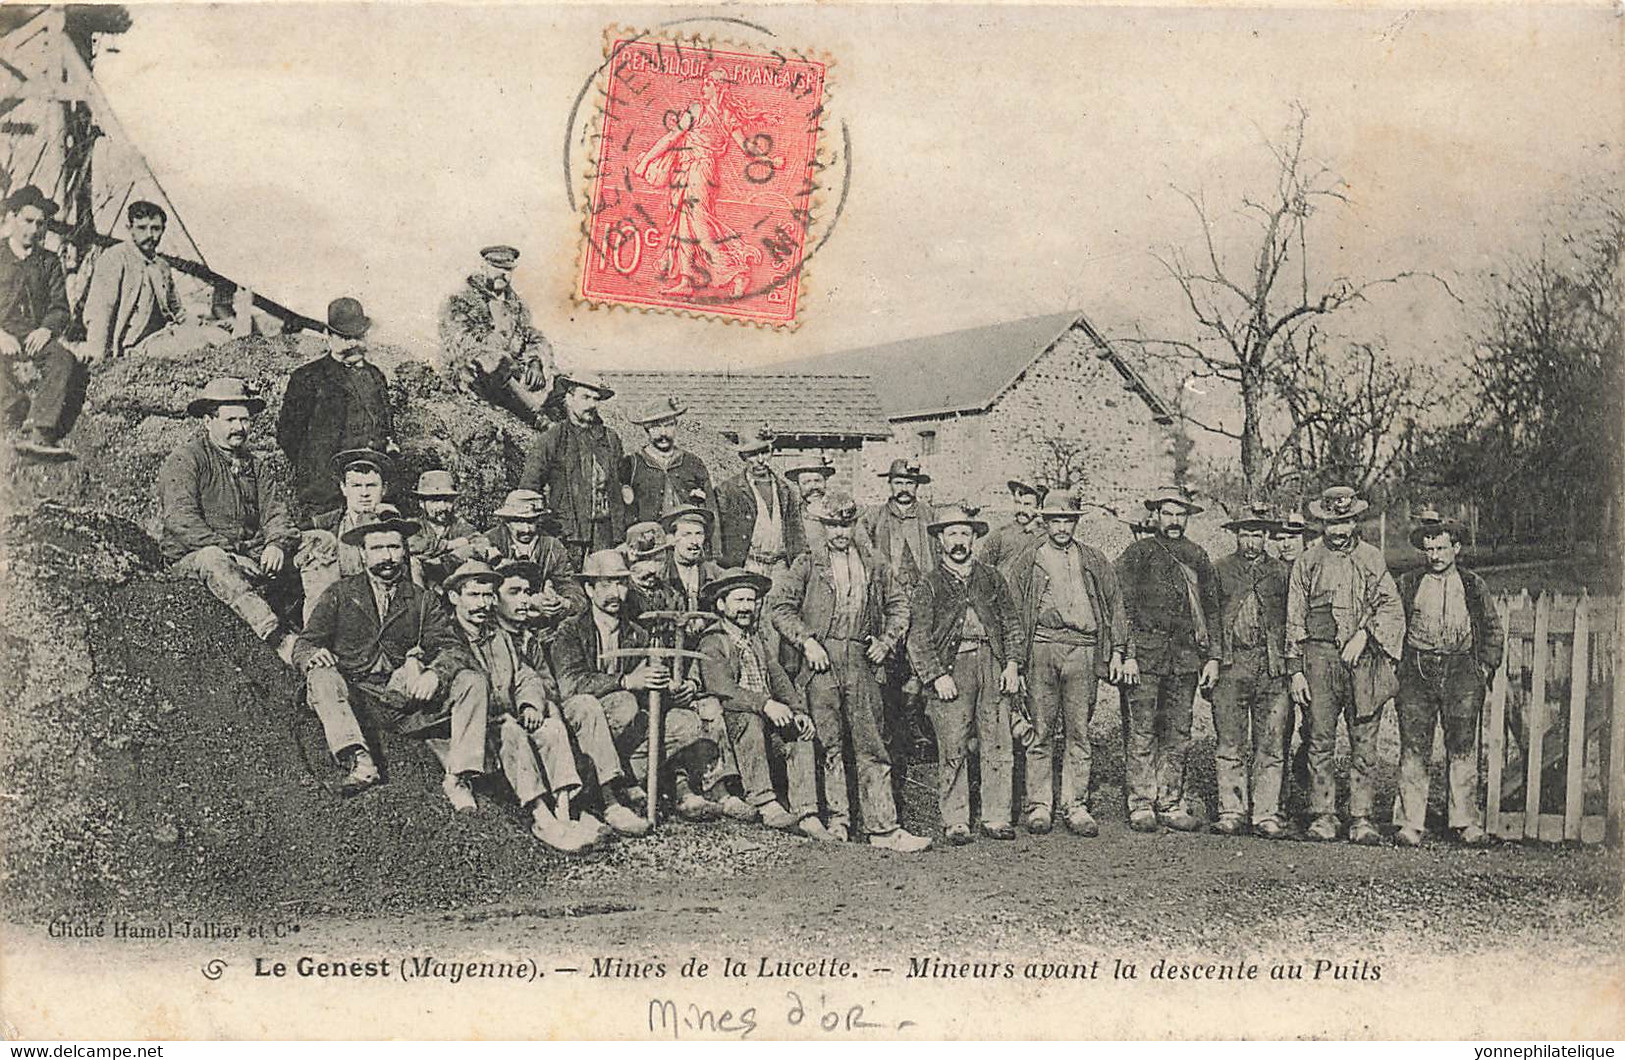 53 - MAYENNE - LE GENEST - Mine De La Lucette - Groupe De Mineurs Avant Descente Au Puits - Mine D'Or (10096) - Le Genest Saint Isle